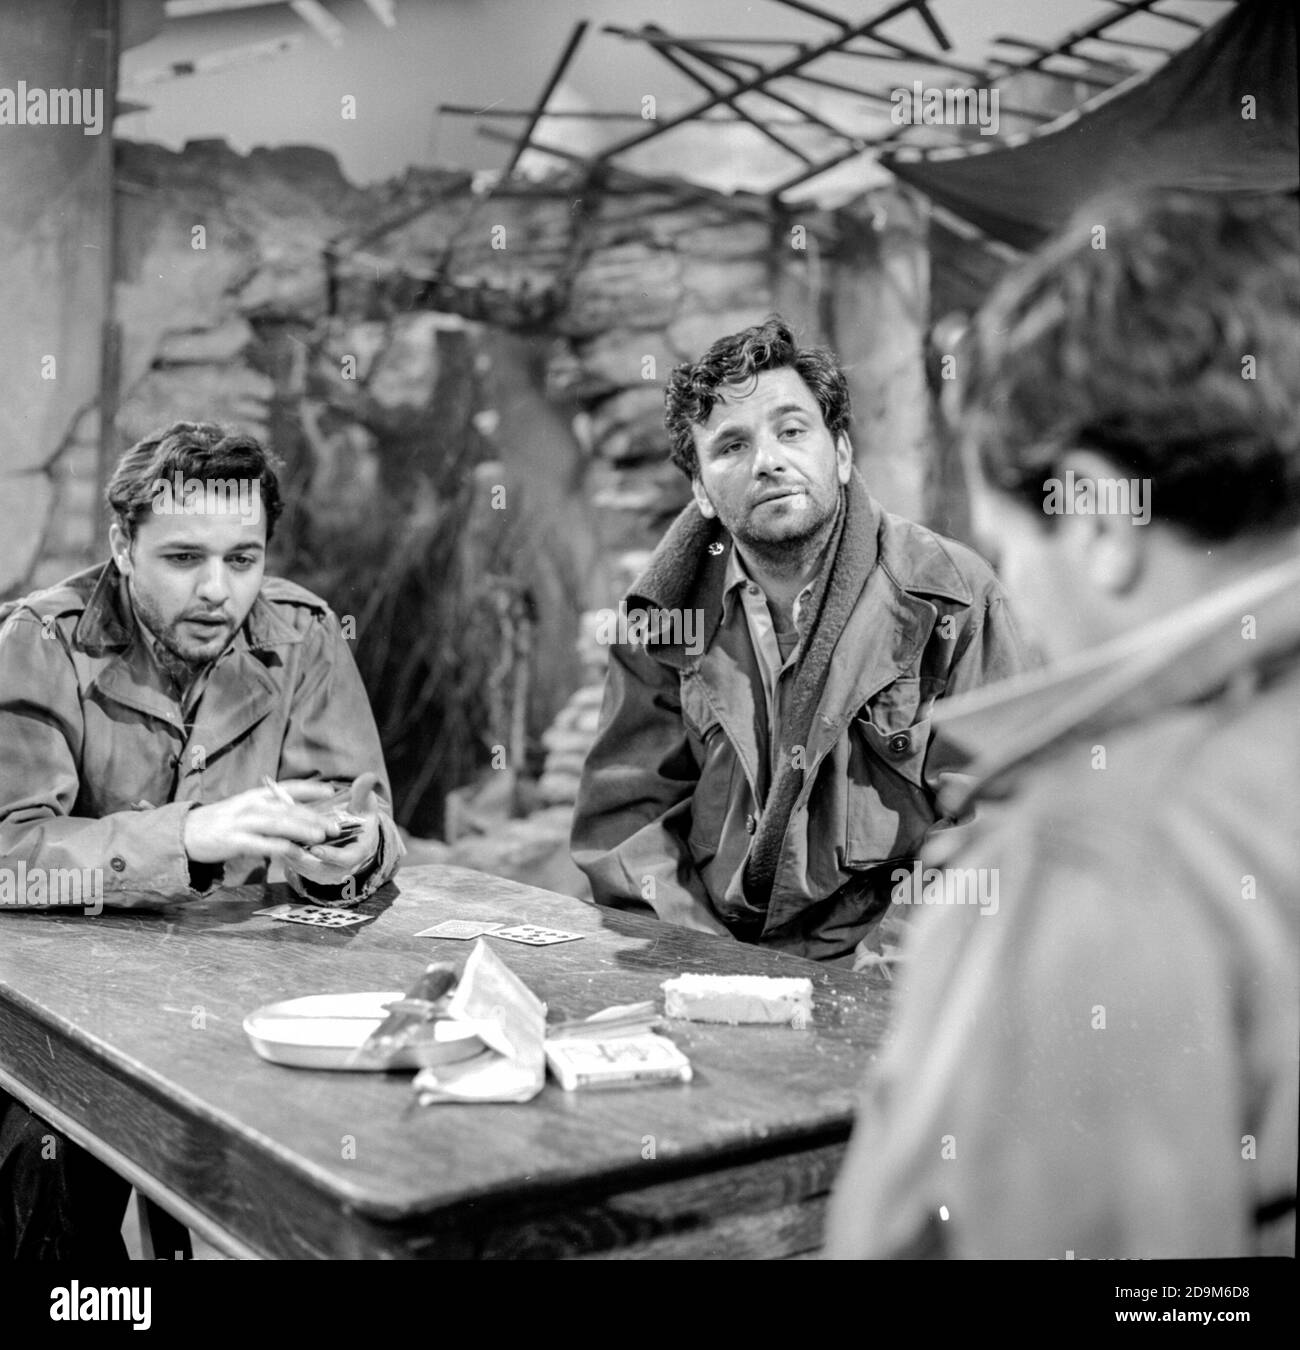 SAL Mineo et Peter Falk apparaissent dans la pièce A Sound of Hunting on the American TV drame anthologie série The Dupont Show of the week, diffusée le 20 mai 1962 par NBC. C'est un drame de la Seconde Guerre mondiale à Monte Cassino, en Italie. Banque D'Images